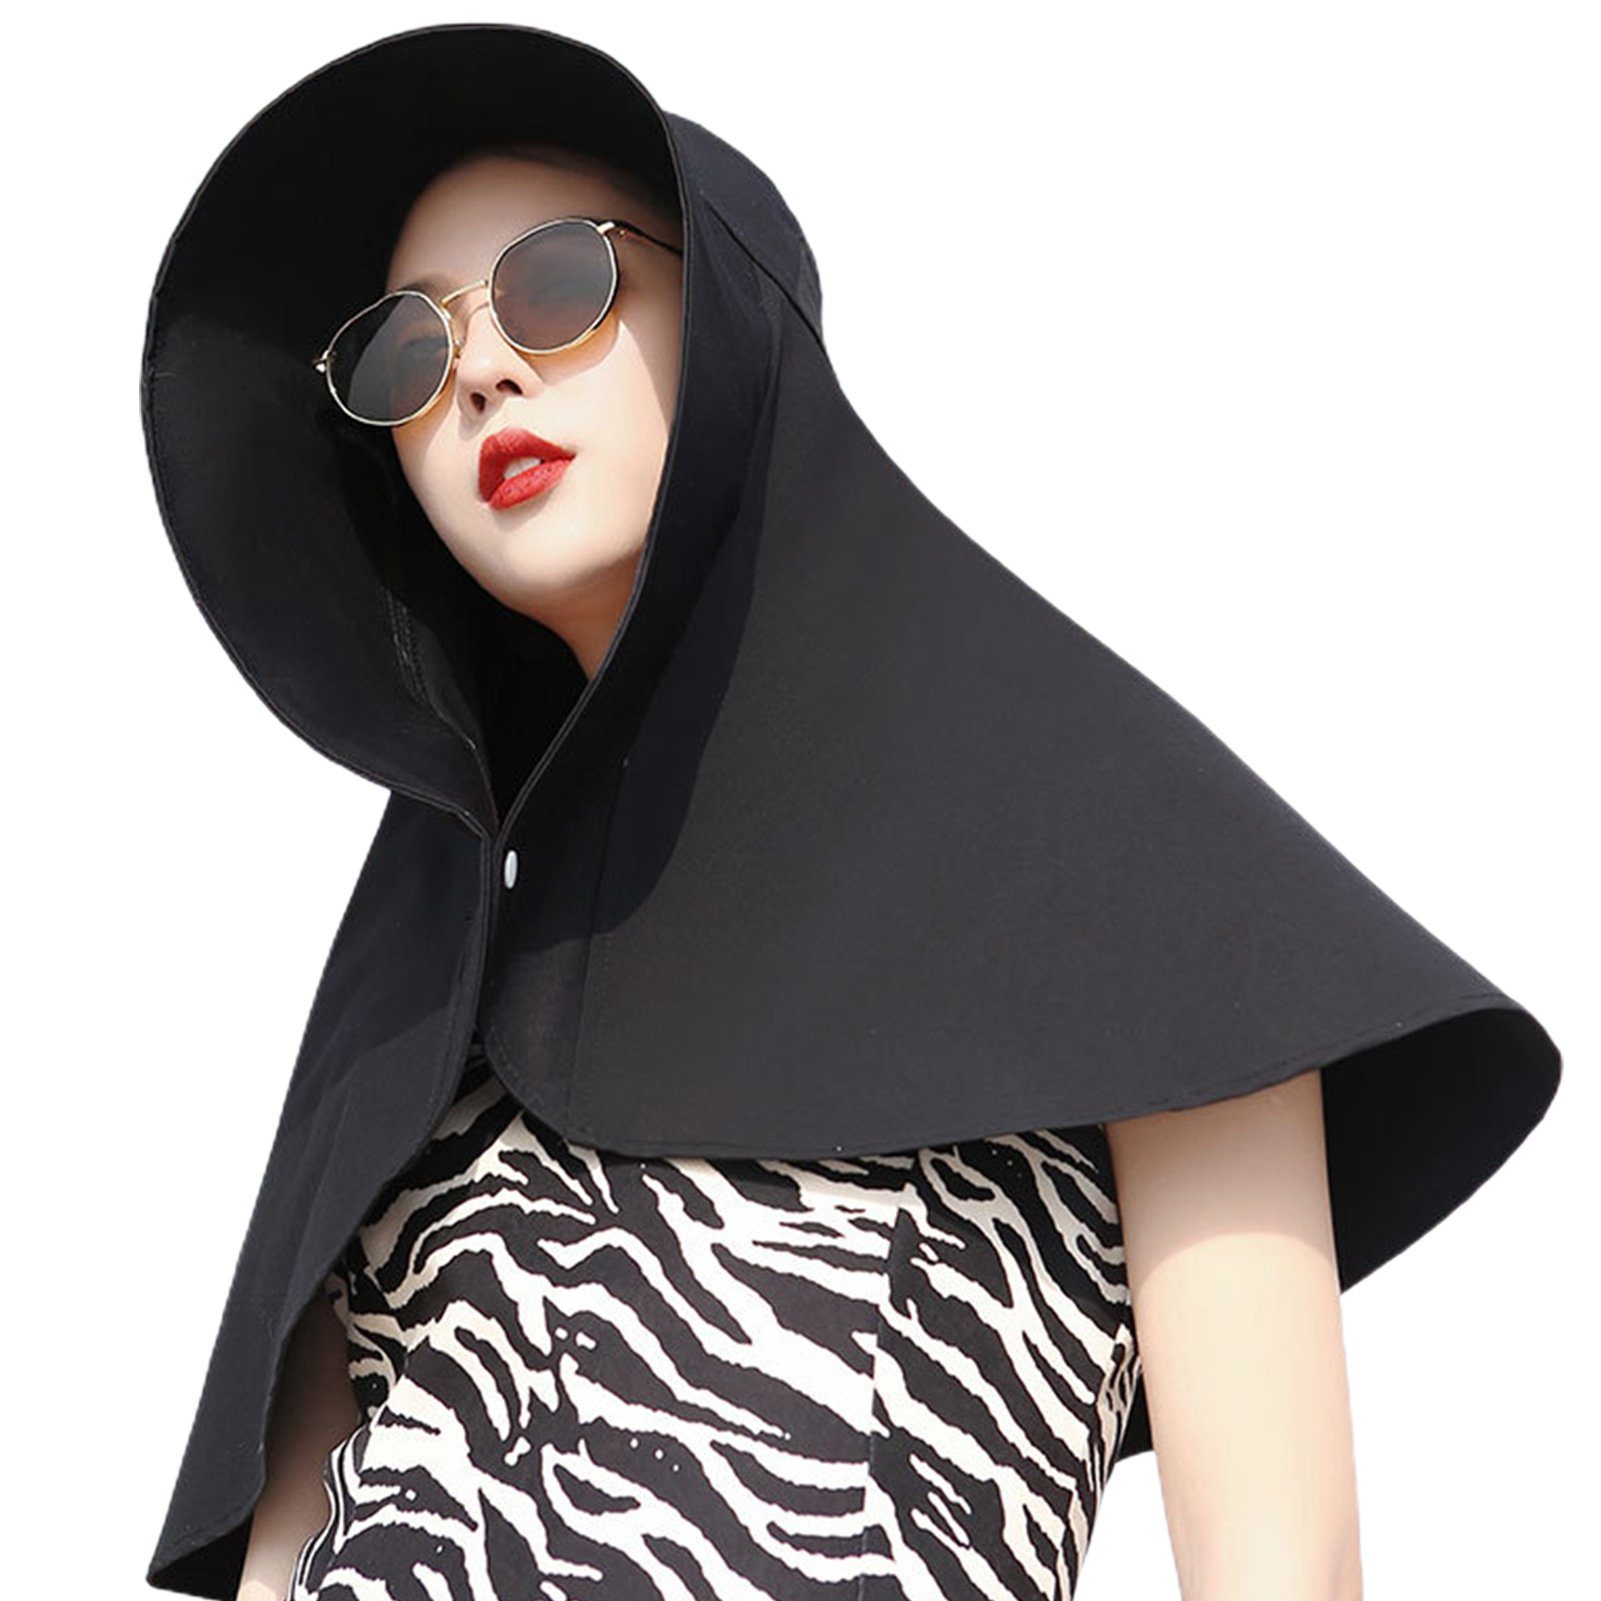 Mode Abdeckung grau Damen Gesicht Blusmart Sonnenhut Sommer Eimer Hut Sonnenschutz Schal